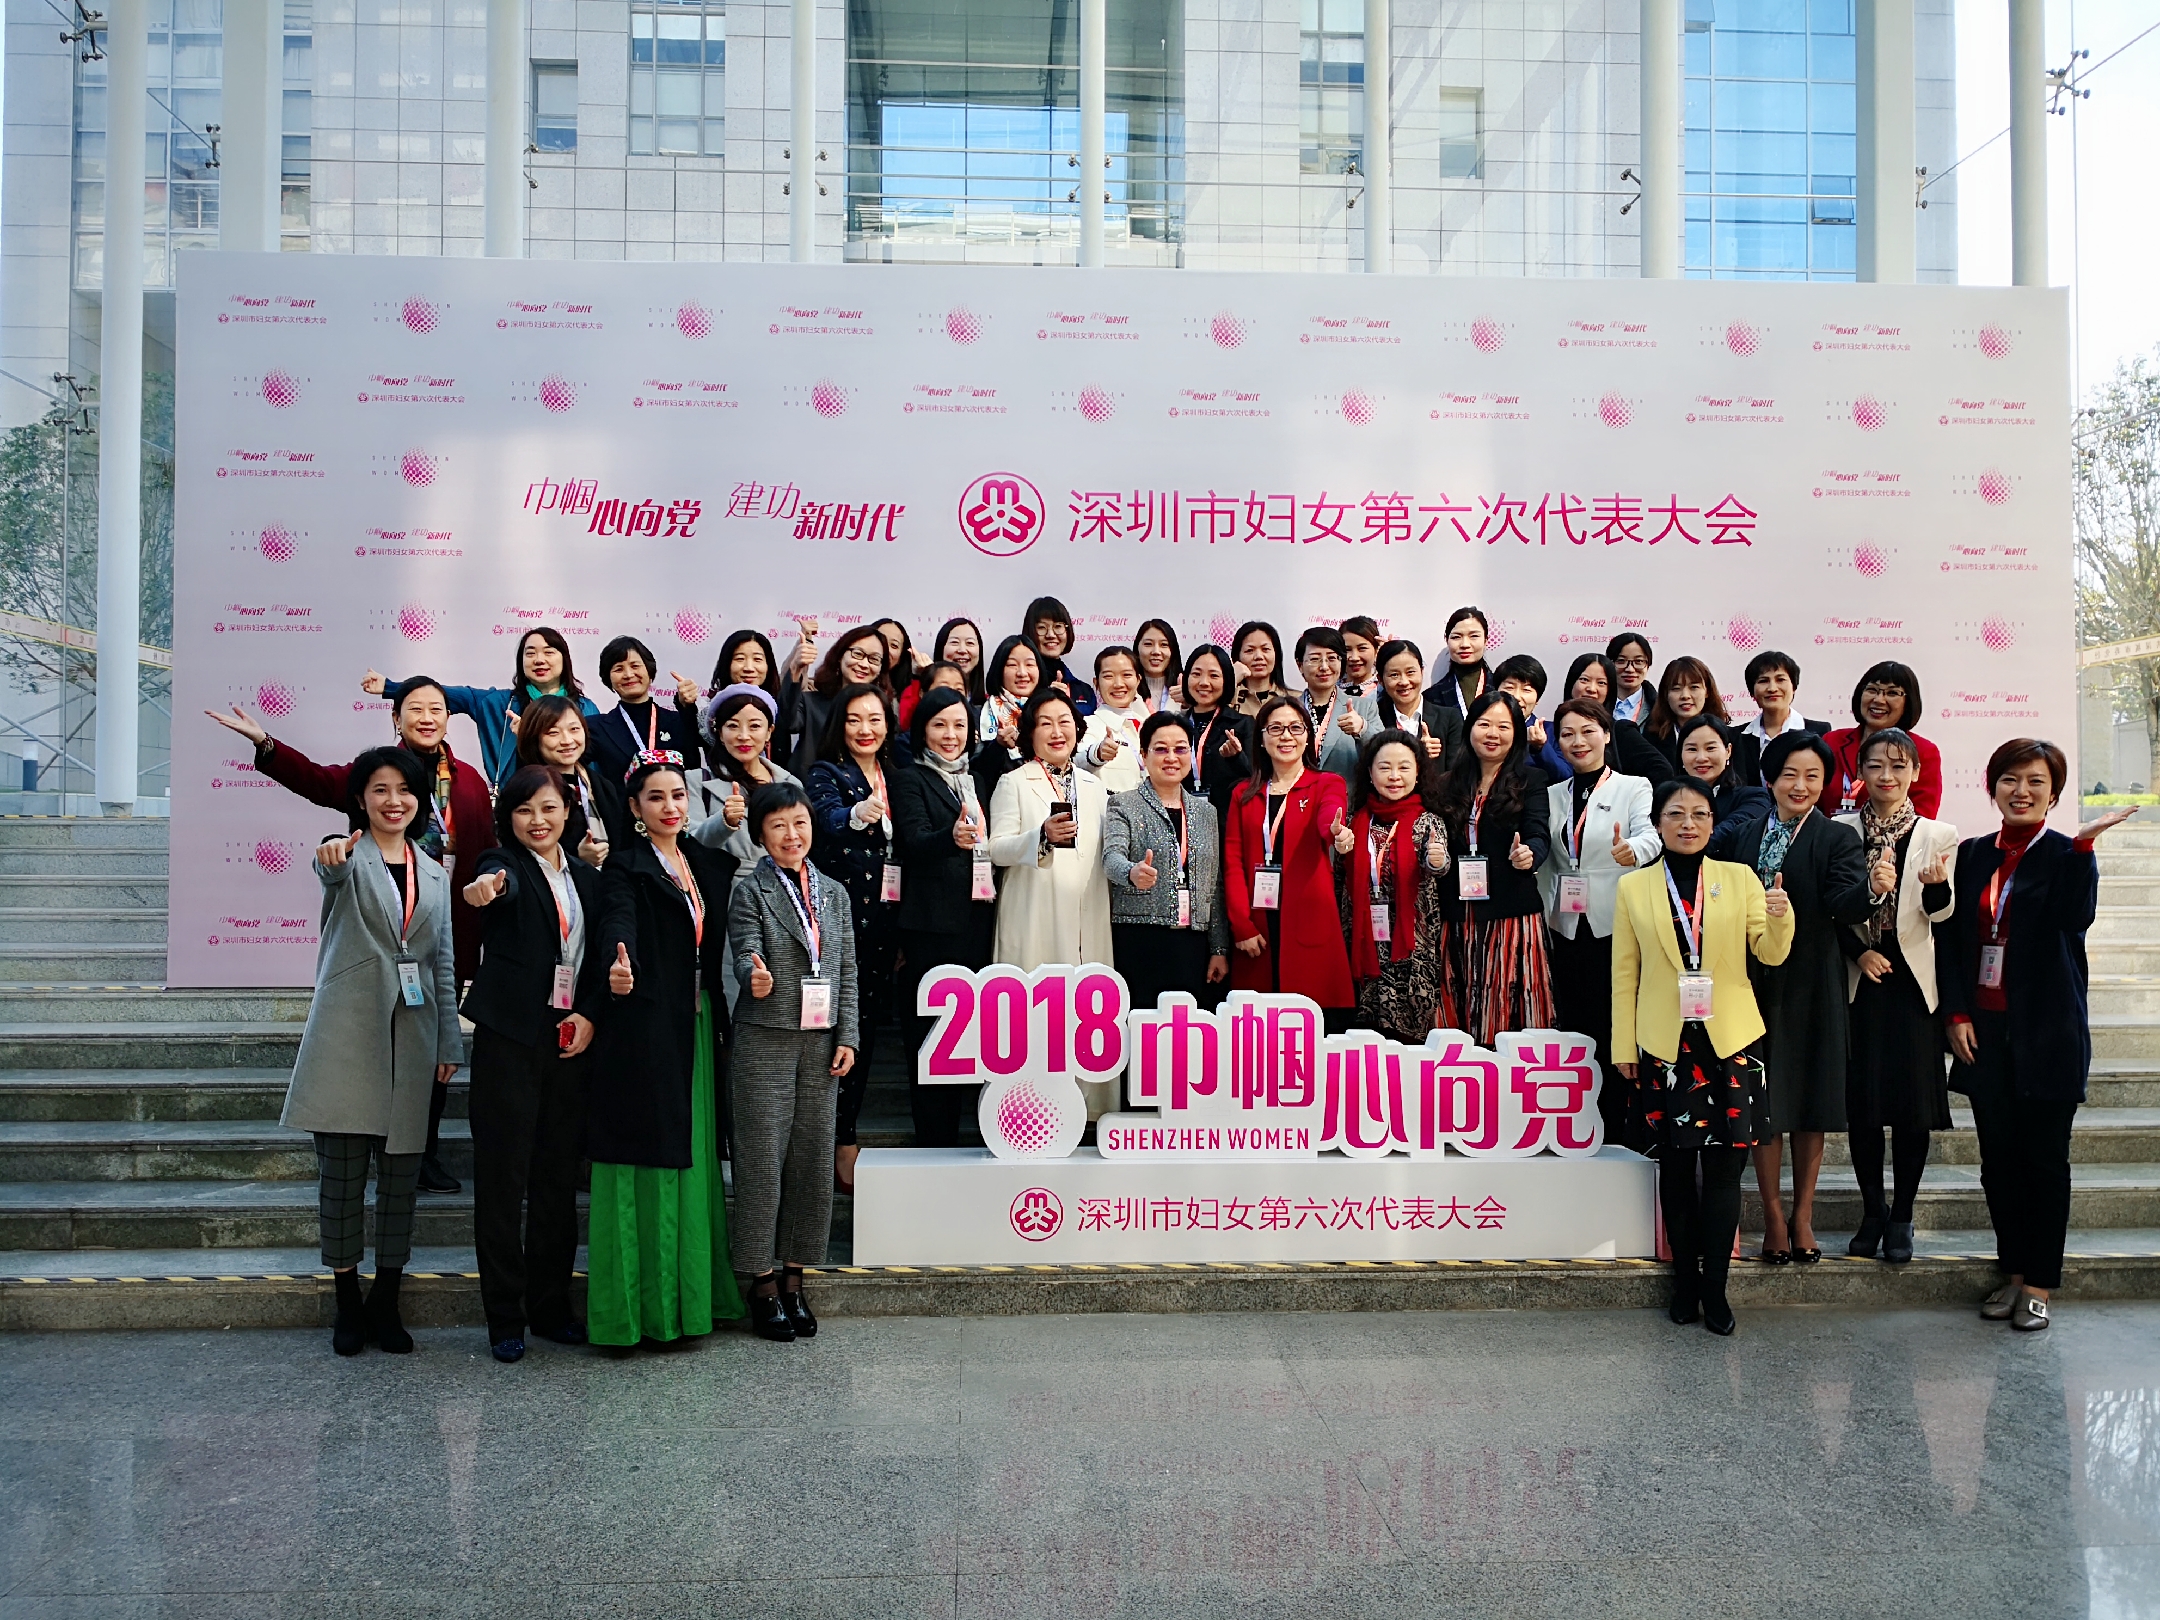 熱烈祝賀董事長當選為深圳市婦女代表